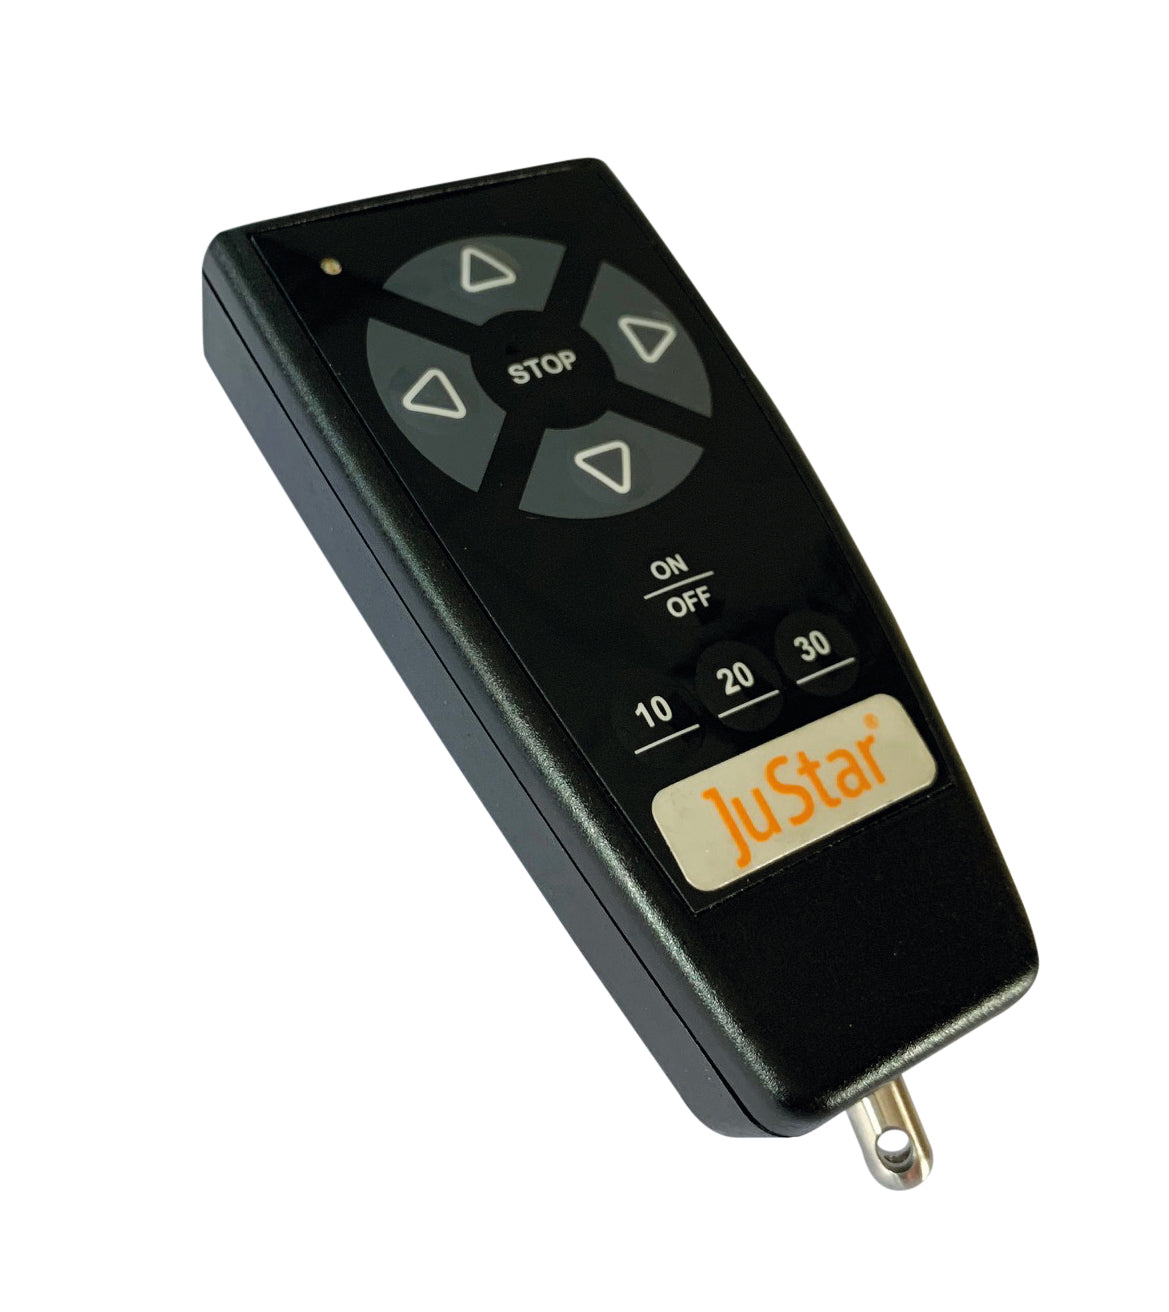 JuStar remote control